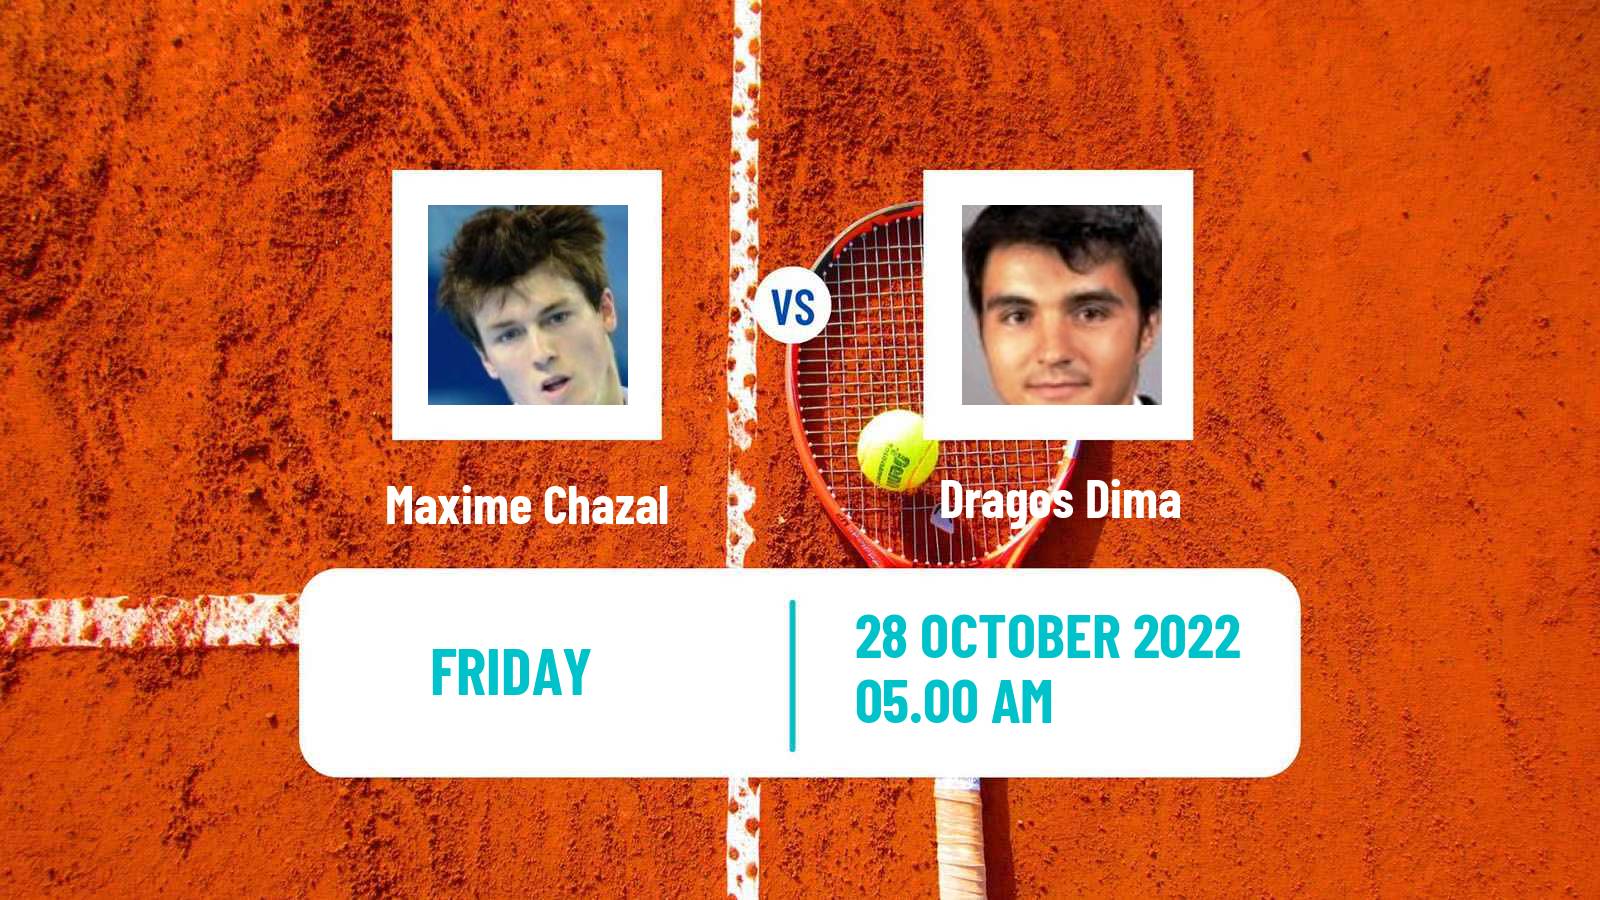 Tennis ITF Tournaments Maxime Chazal - Dragos Dima